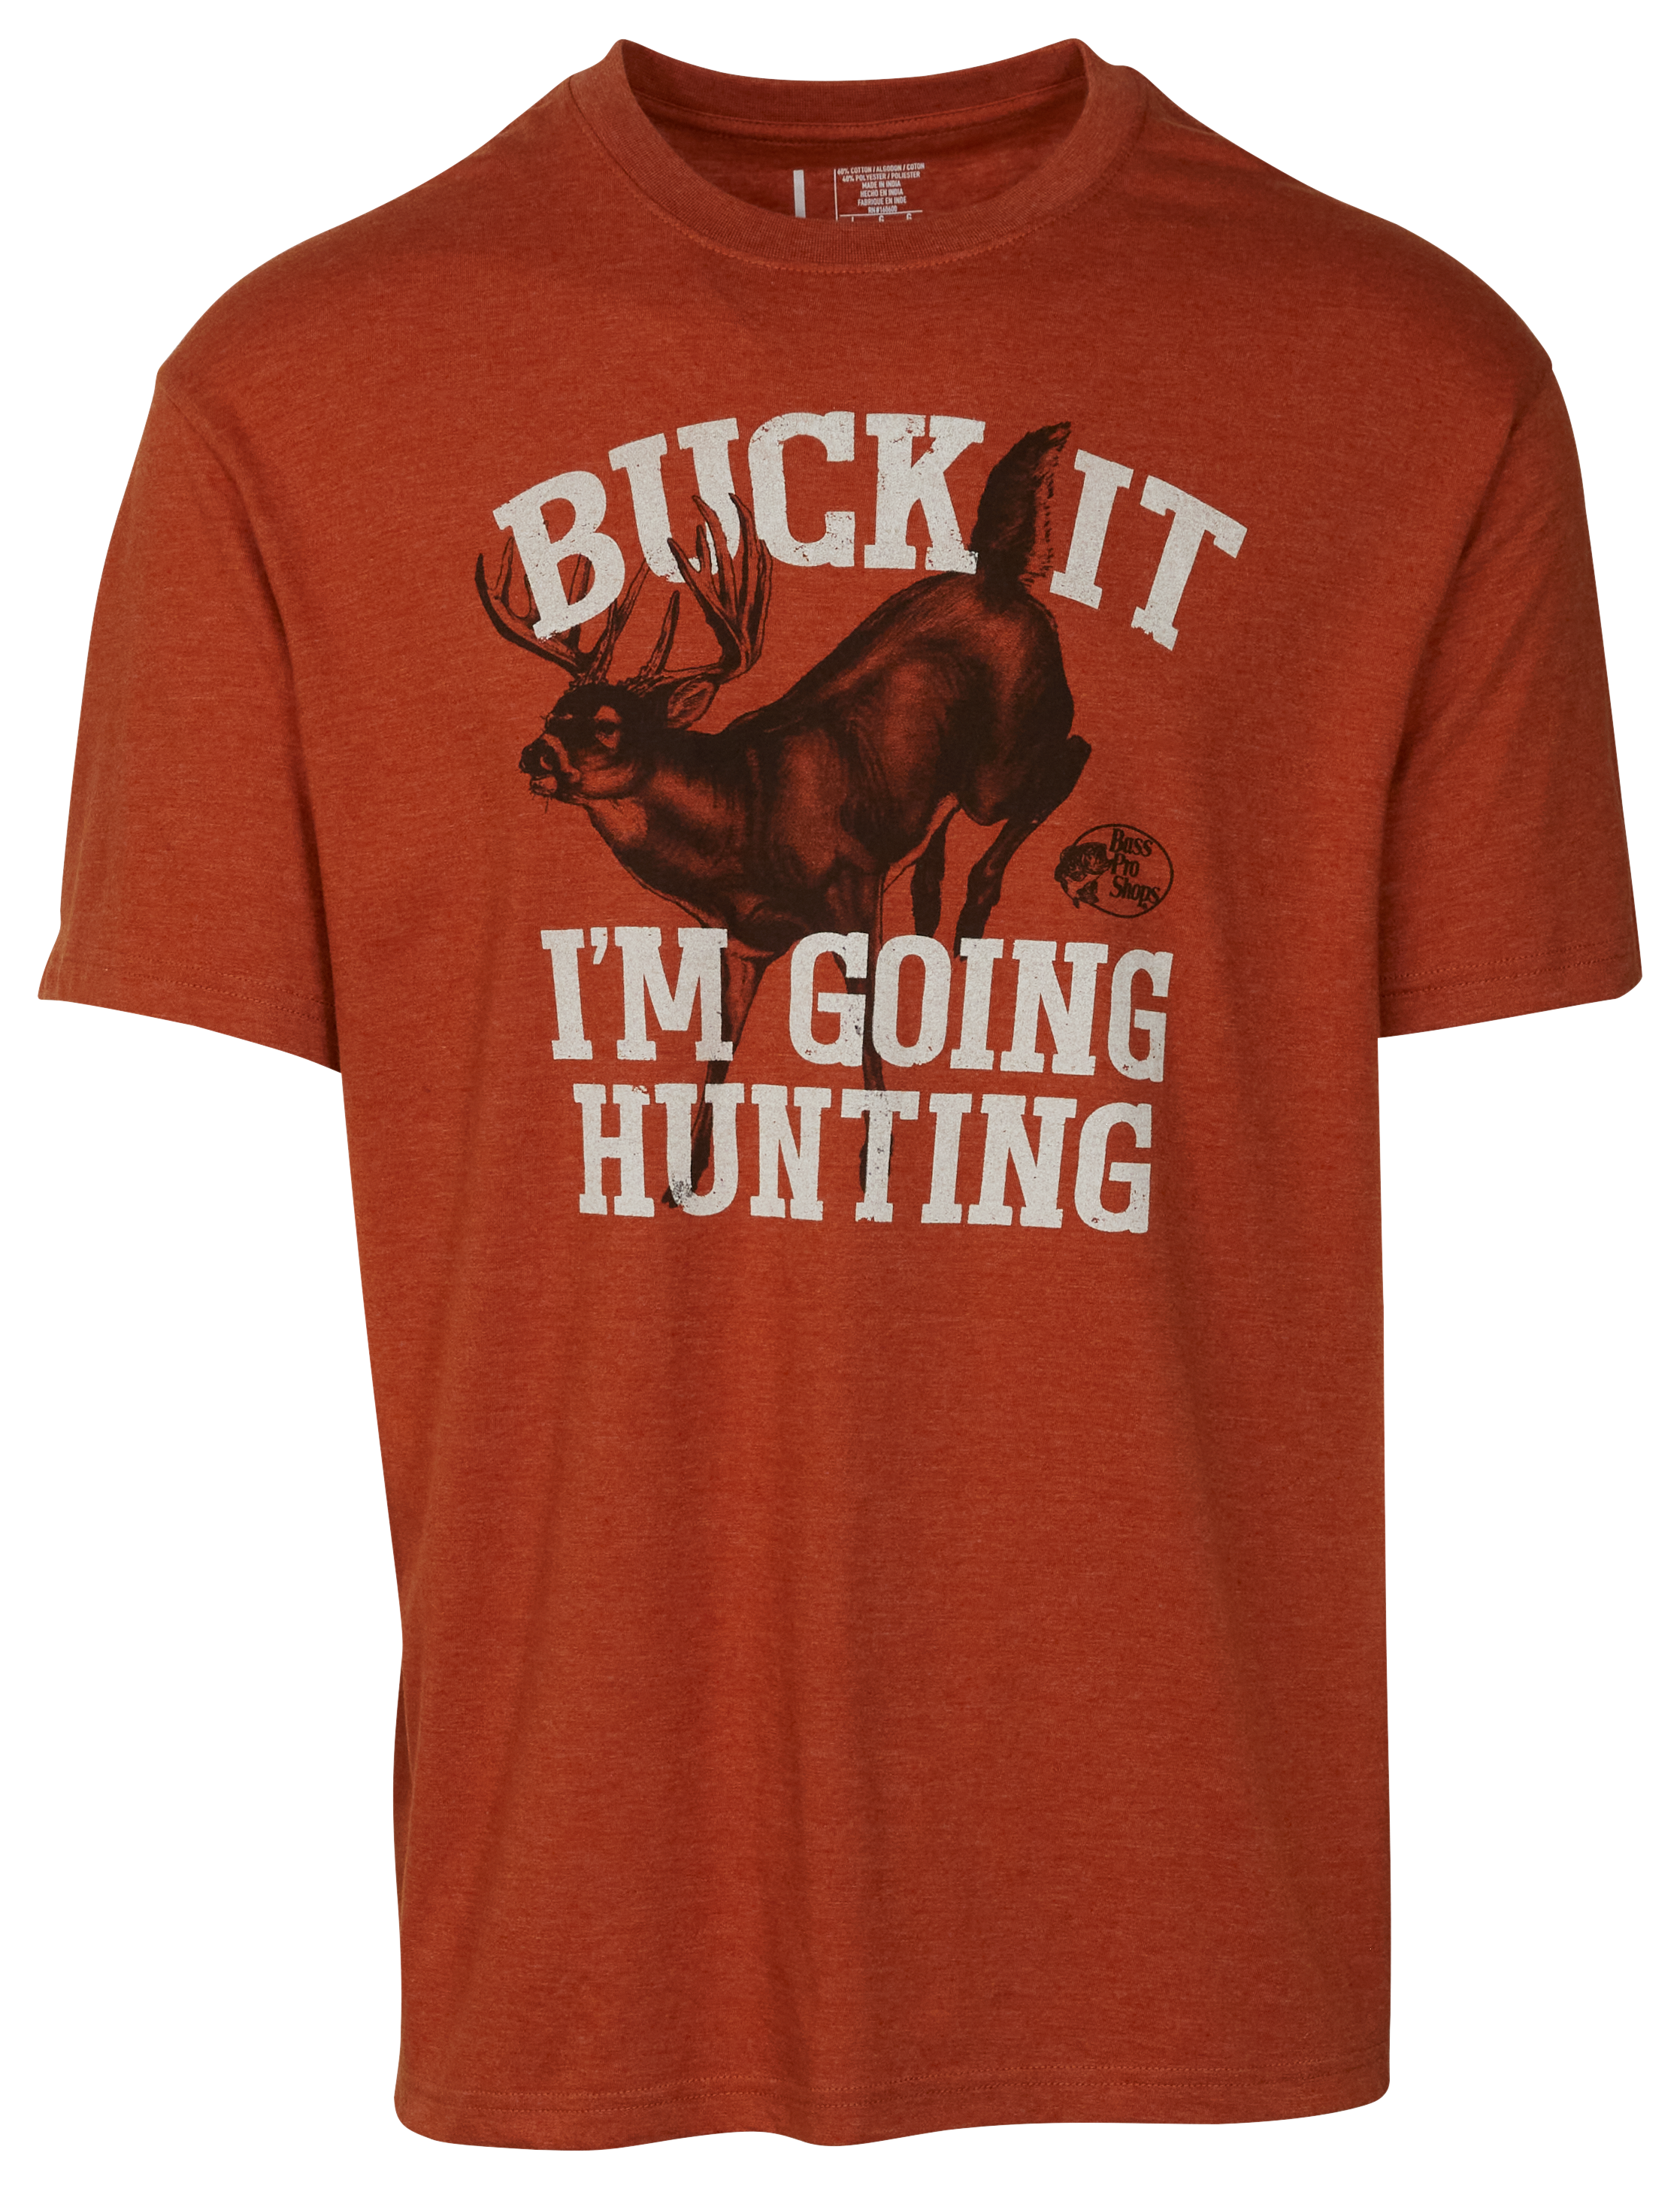 Bass Pro Shops Buck It Short-Sleeve T-Shirt for Men - Rust Heather - M